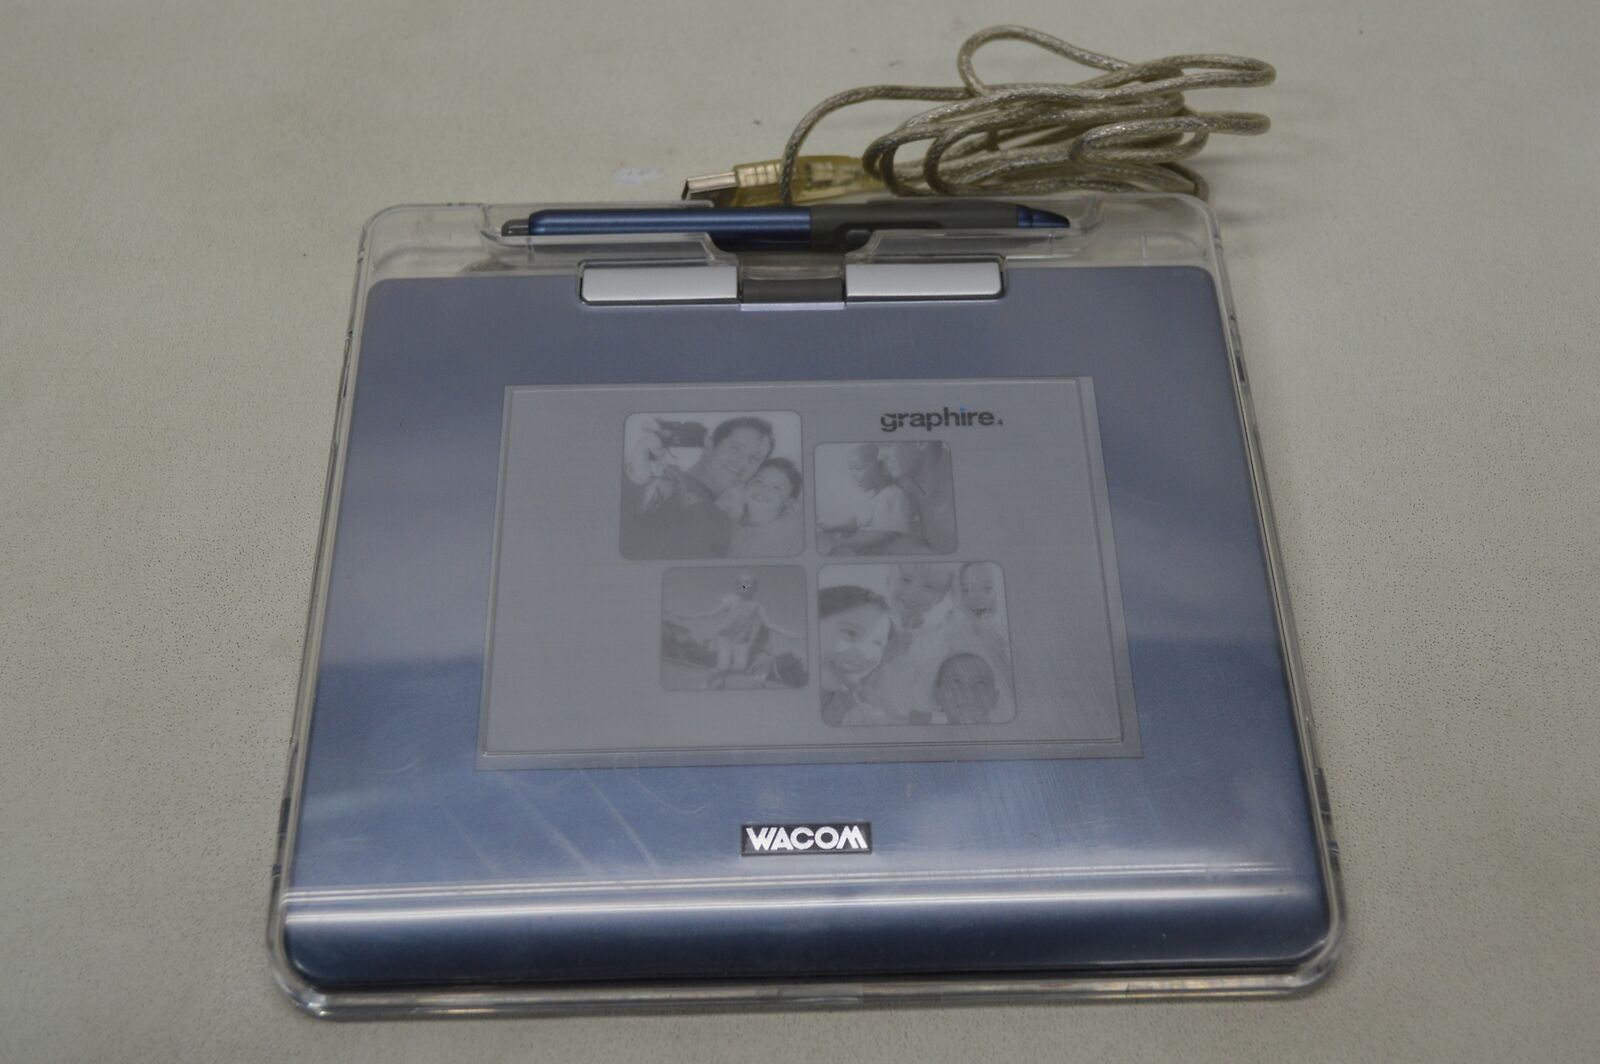 WACOM CTE-440 USB Drawing Graphics Tablet